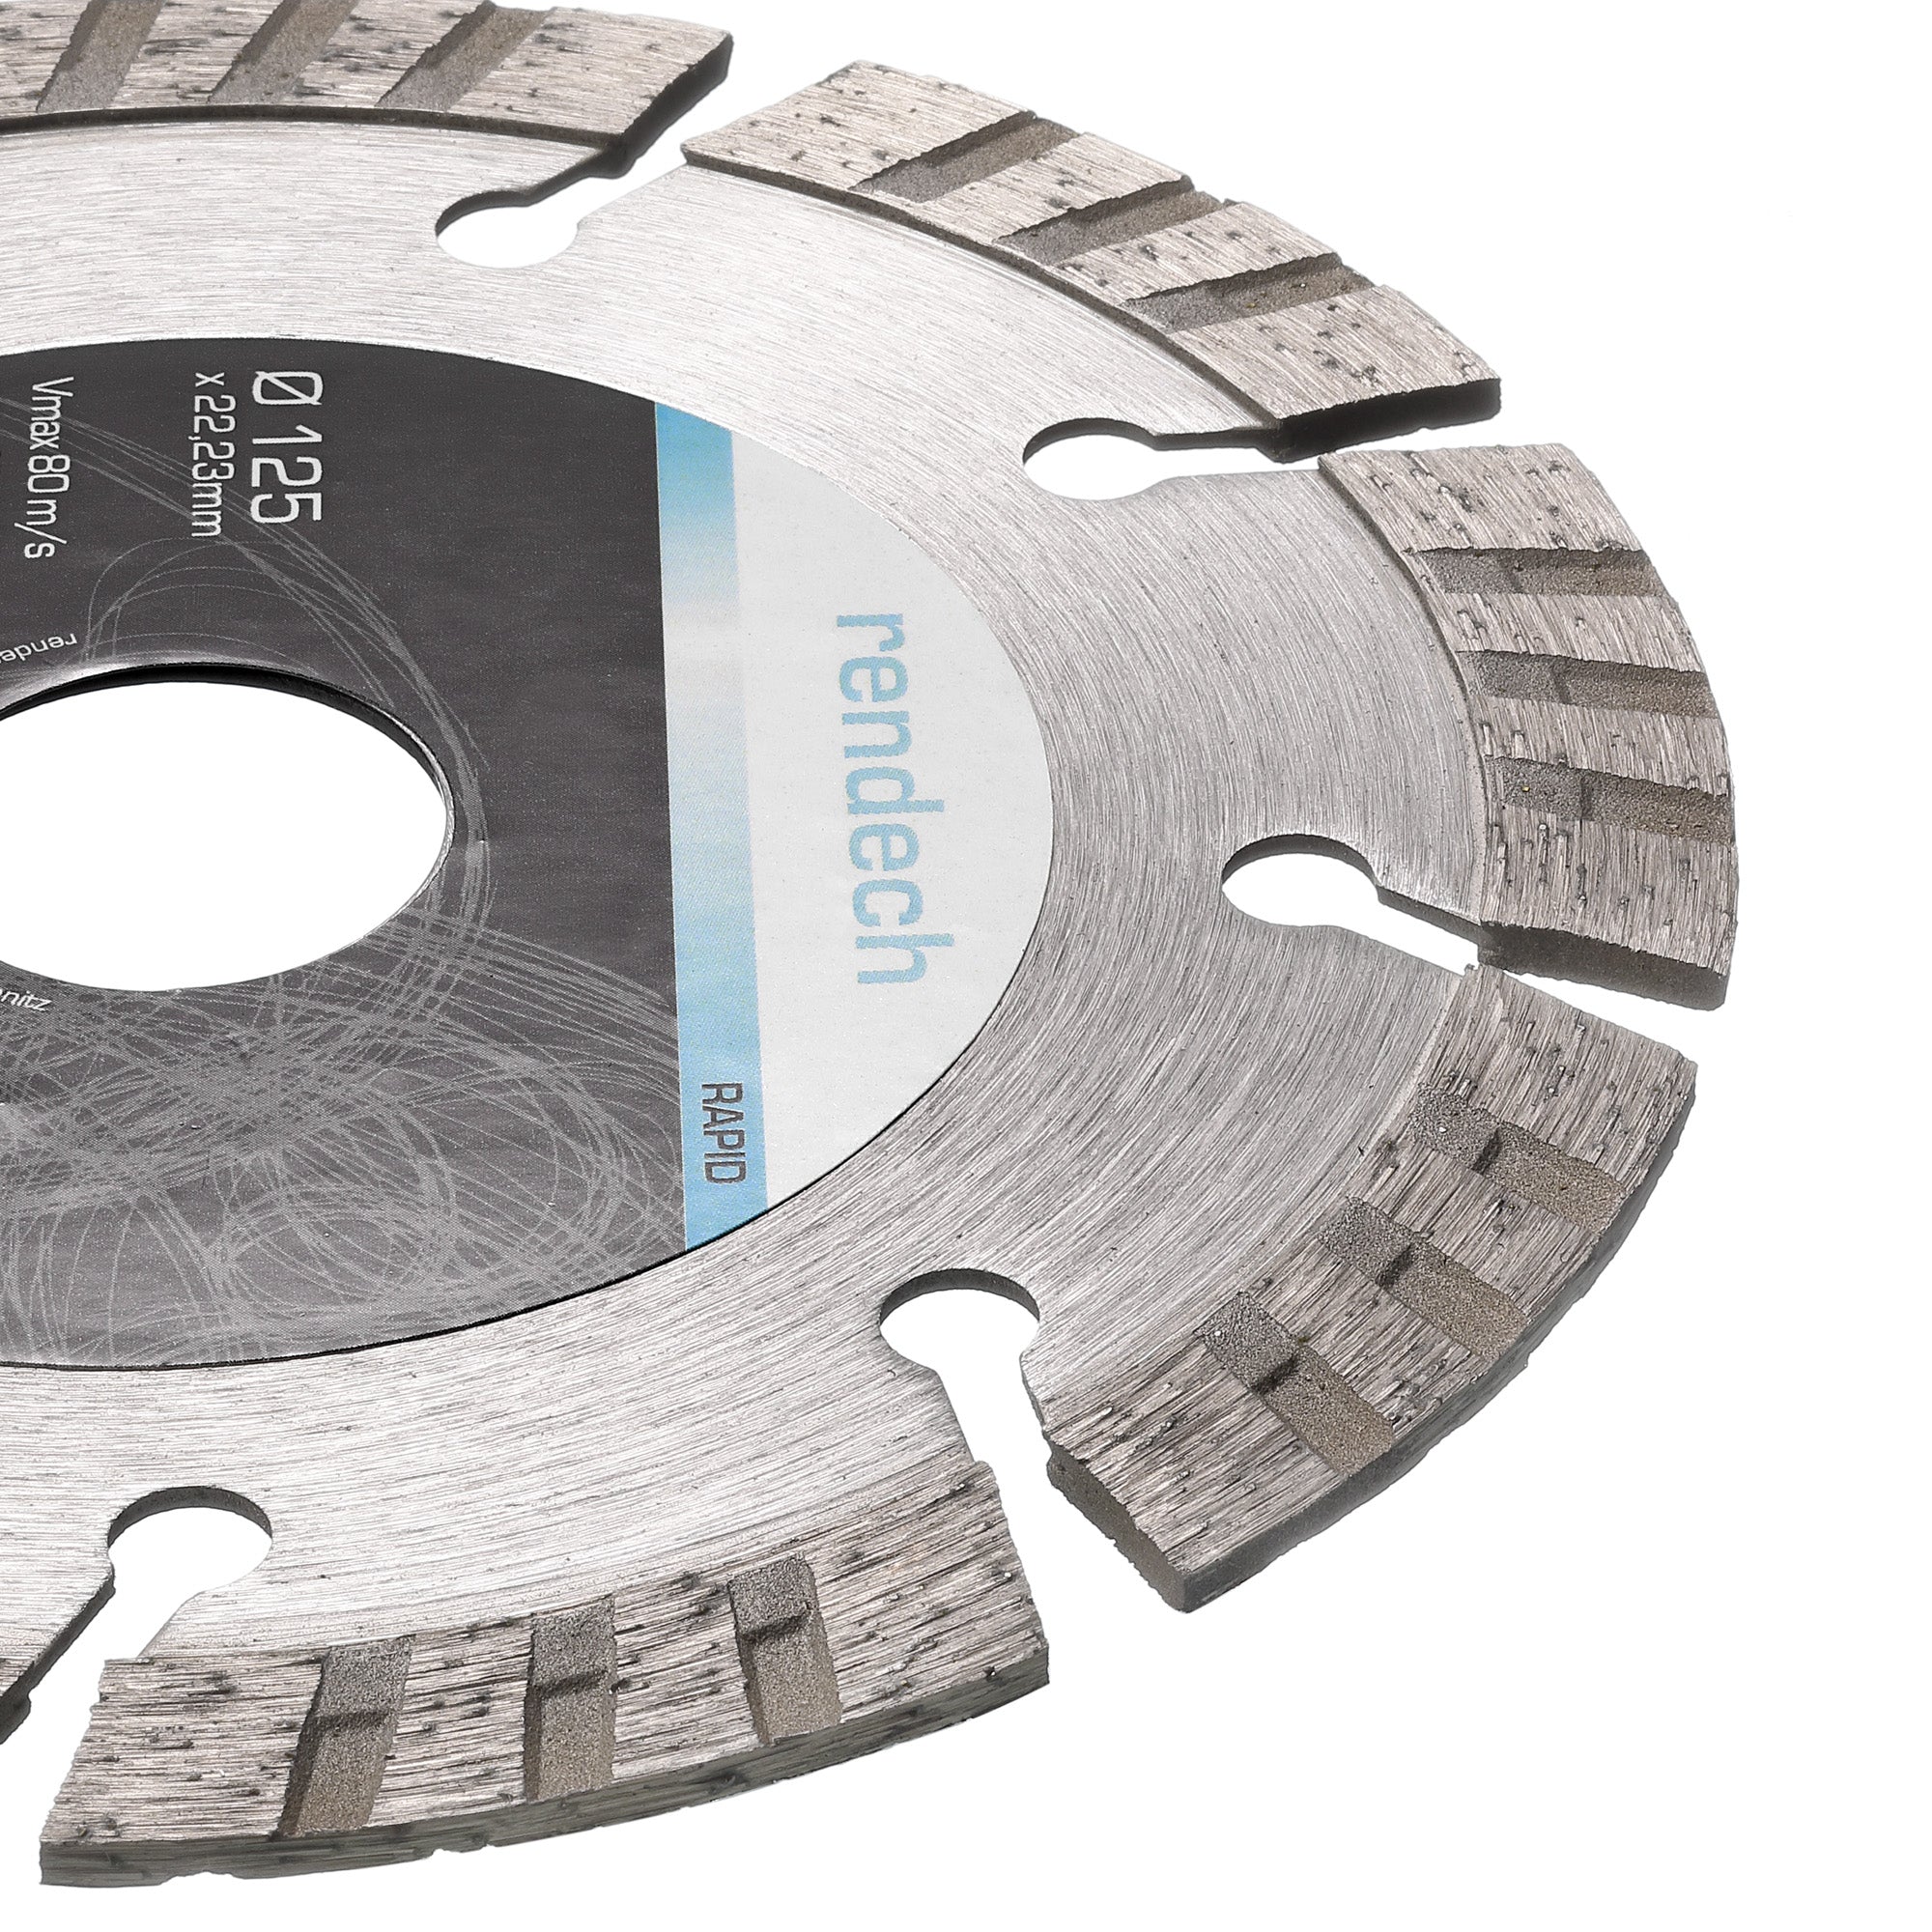 Turbo Diamanttrennscheibe 125 mm für Granit, Beton, Stein | rendech®